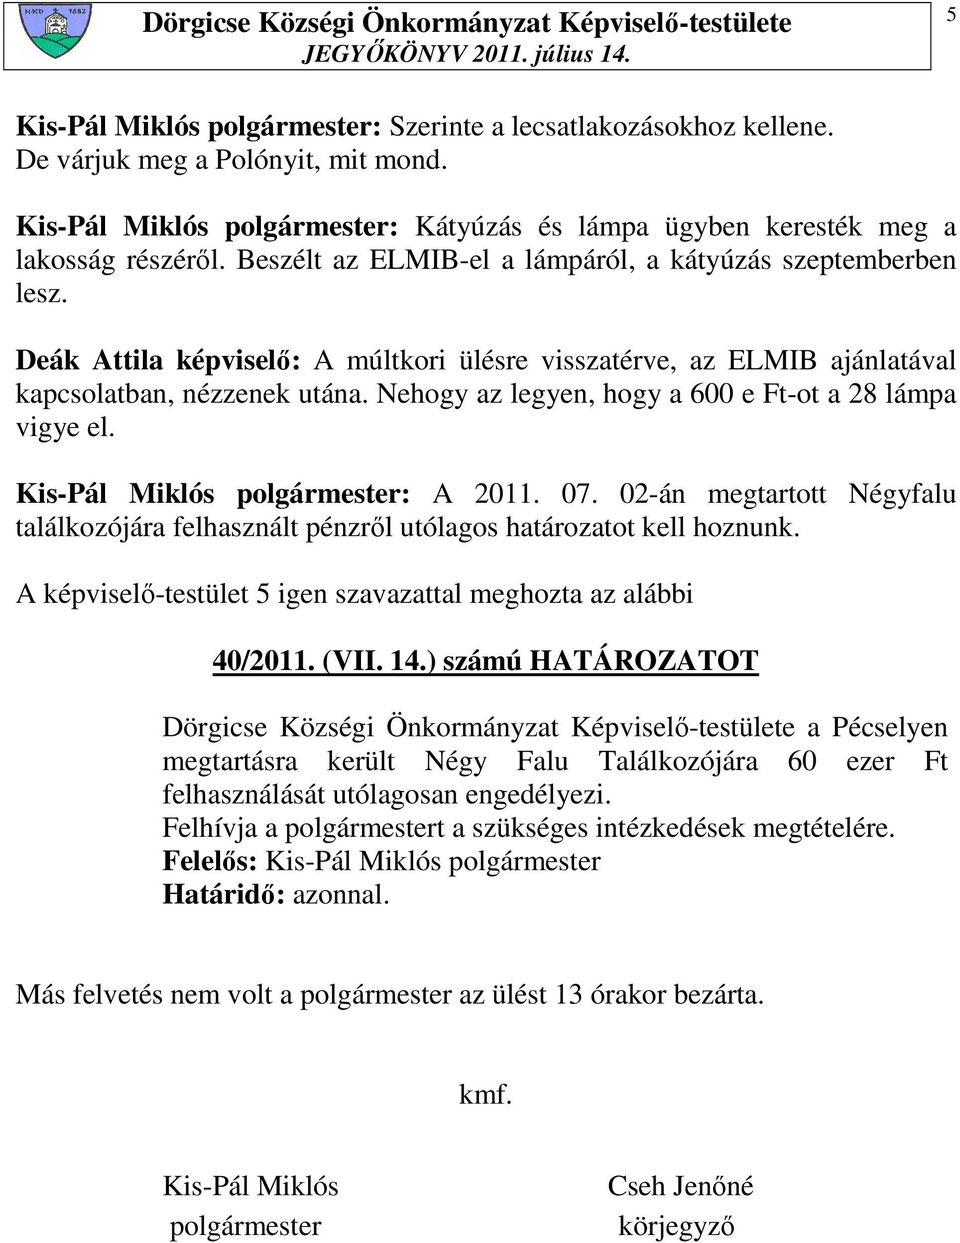 Nehogy az legyen, hogy a 600 e Ft-ot a 28 lámpa vigye el. Kis-Pál Miklós polgármester: A 2011. 07. 02-án megtartott Négyfalu találkozójára felhasznált pénzrıl utólagos határozatot kell hoznunk.